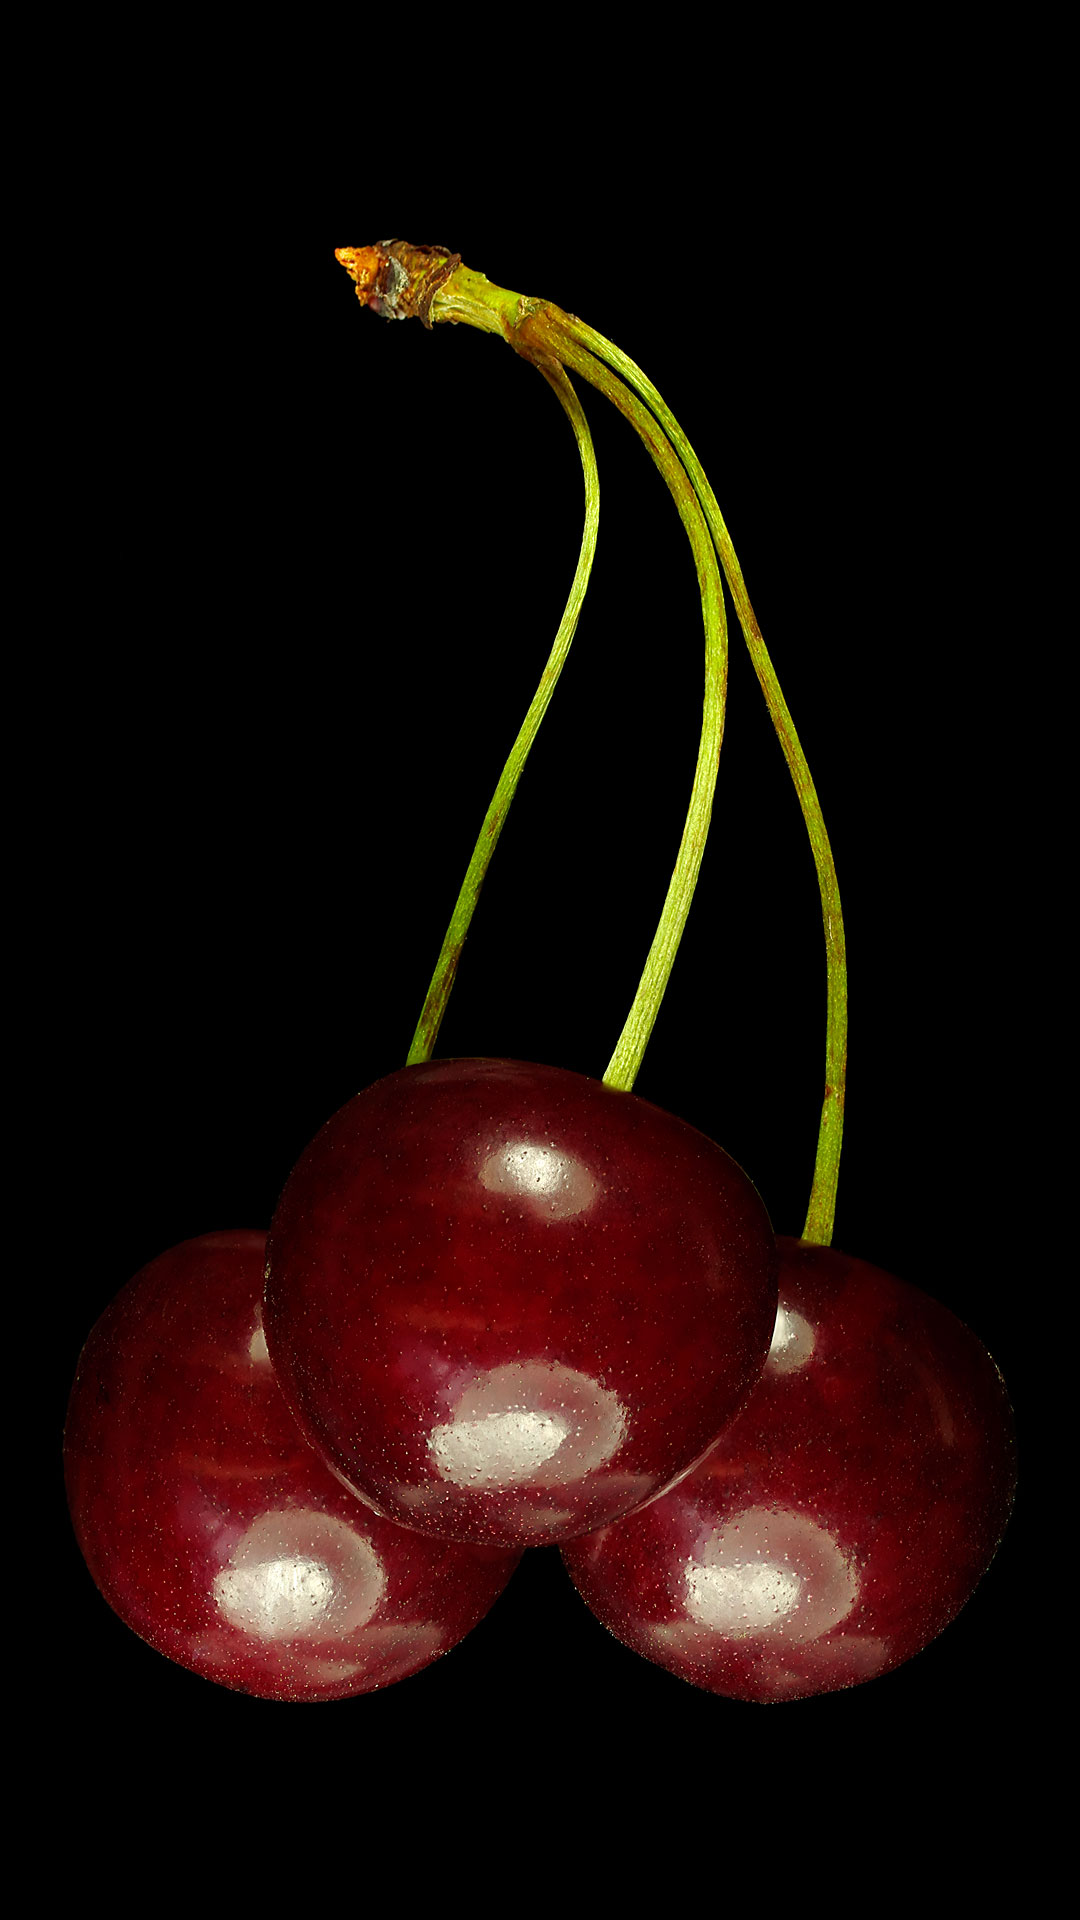 Sour cherry: Prunus cerasus